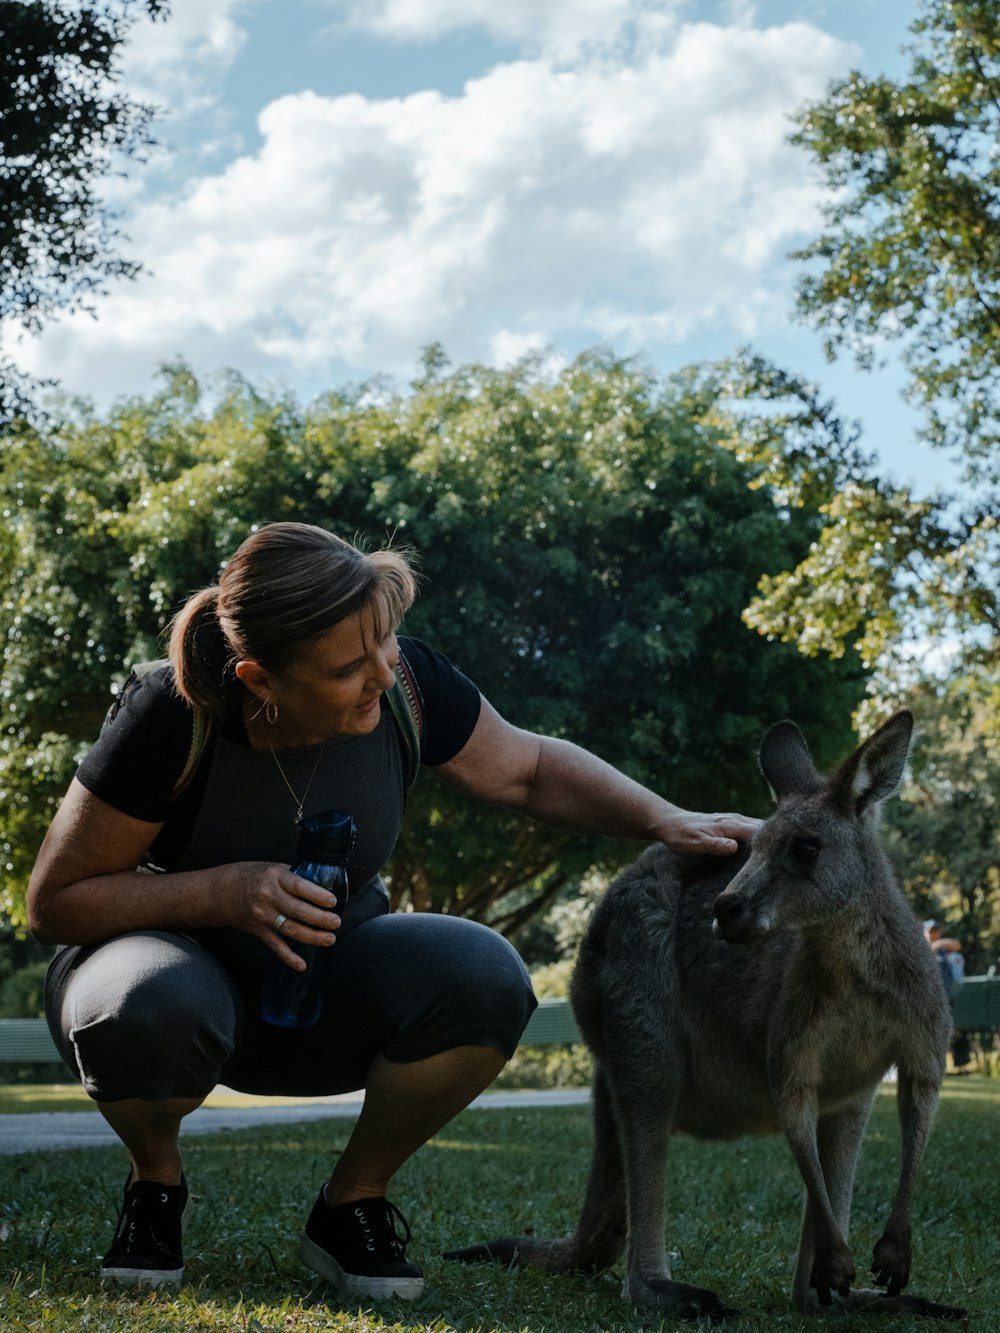 woman in black t-shirt sitting beside gray kangaroo during daytime